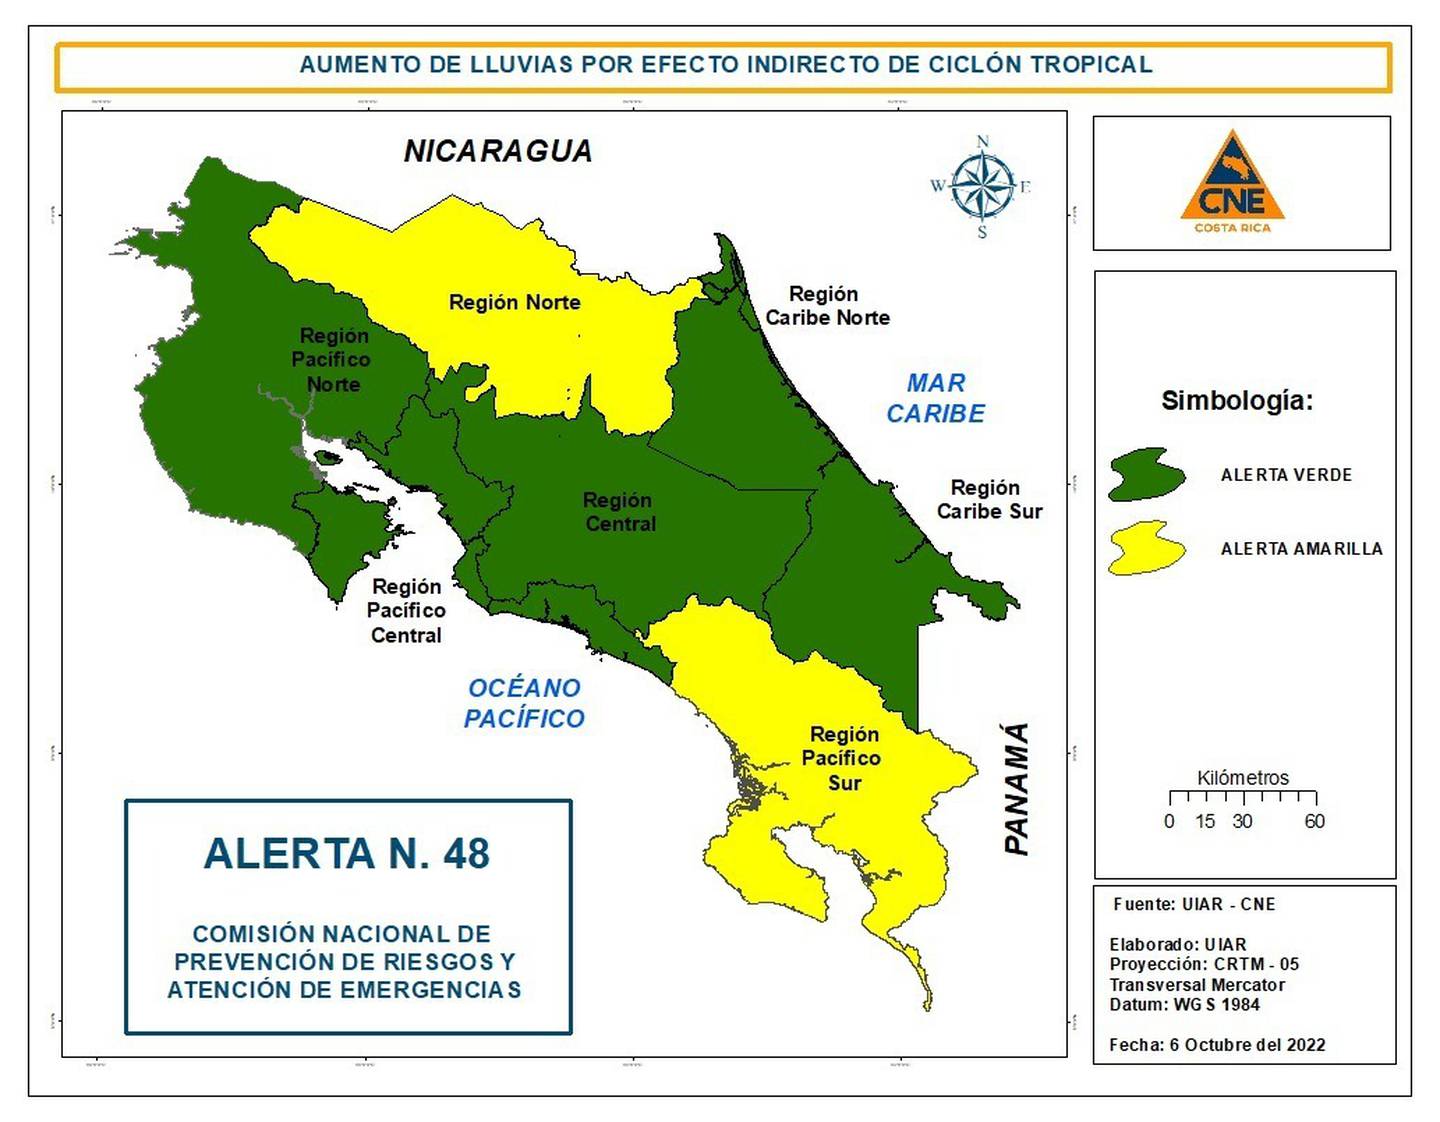 La CNE declaró alerta amarilla para la zona norte y el Pacífico Sur. Foto CNE.